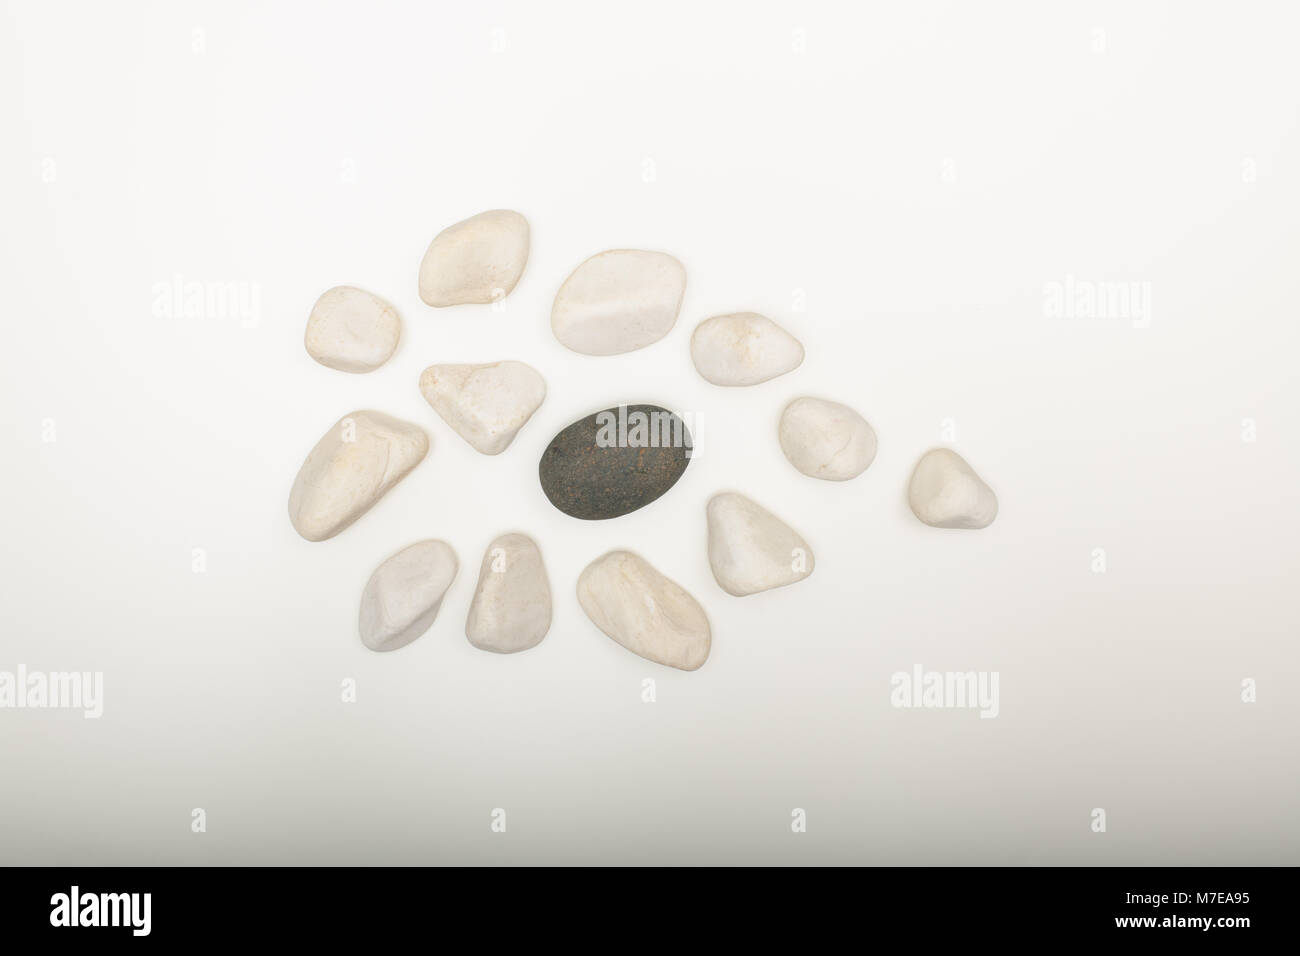 Wasser gewaschen glatte weiße Kieselsteine mit einem einzigen schwarz auf weißem Hintergrund mit Kopie Raum in einem konzeptionellen Bild Stockfoto